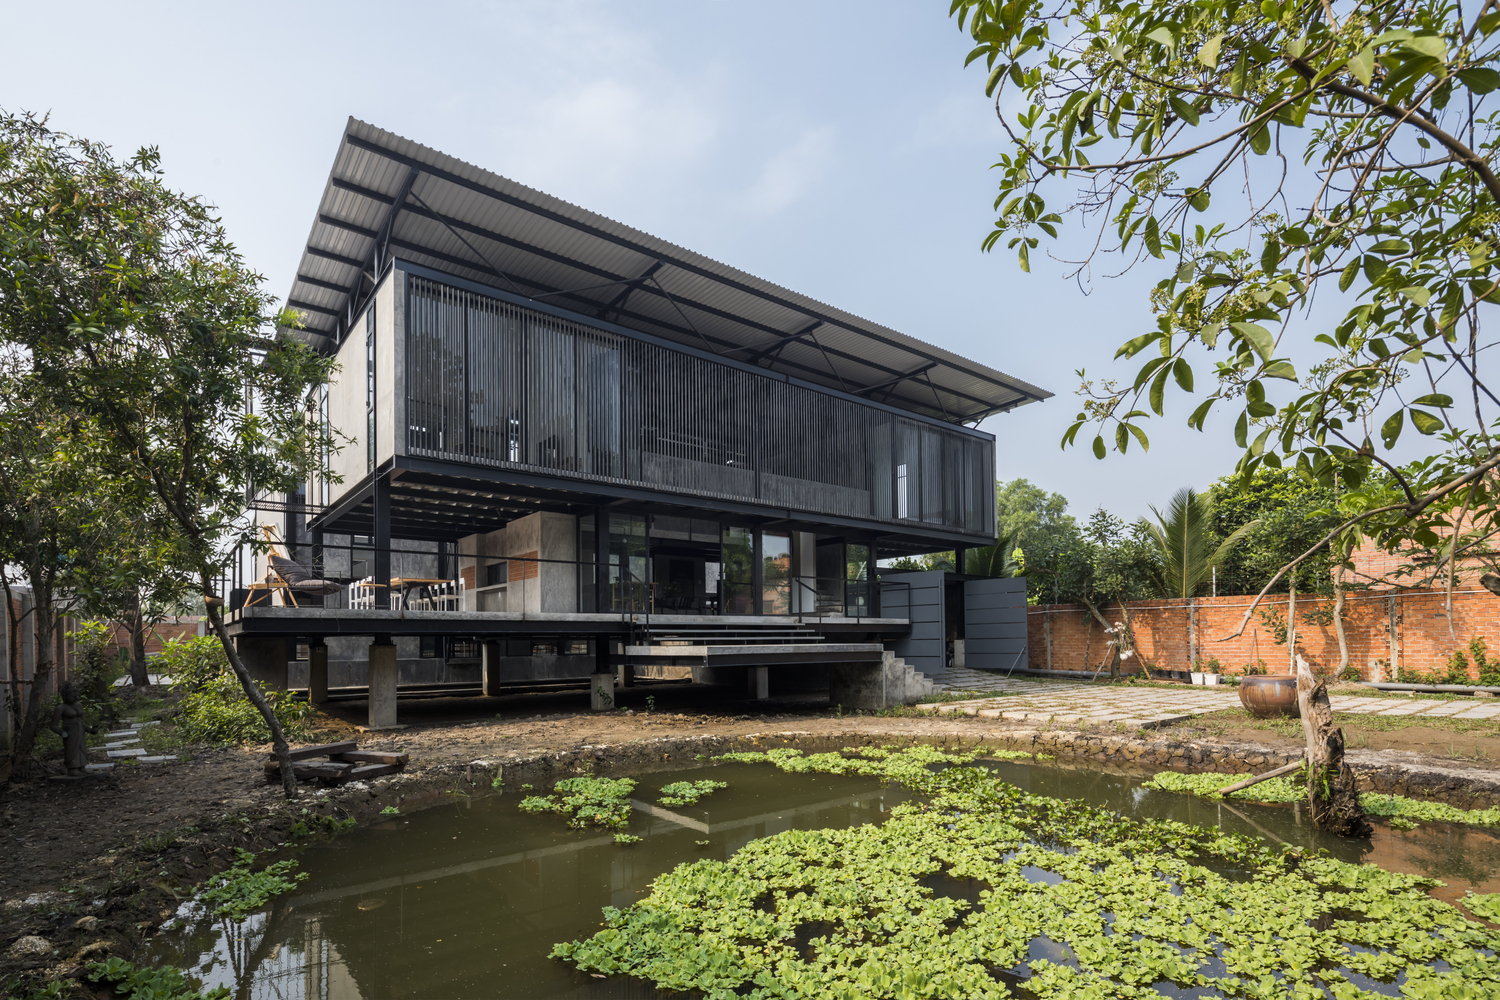 บ้านและสตูดิของศิลปินเวียดนามกับสถาปัตยกรรมพื้นถิ่นที่งดงามด้วยวัสดุดิบๆ